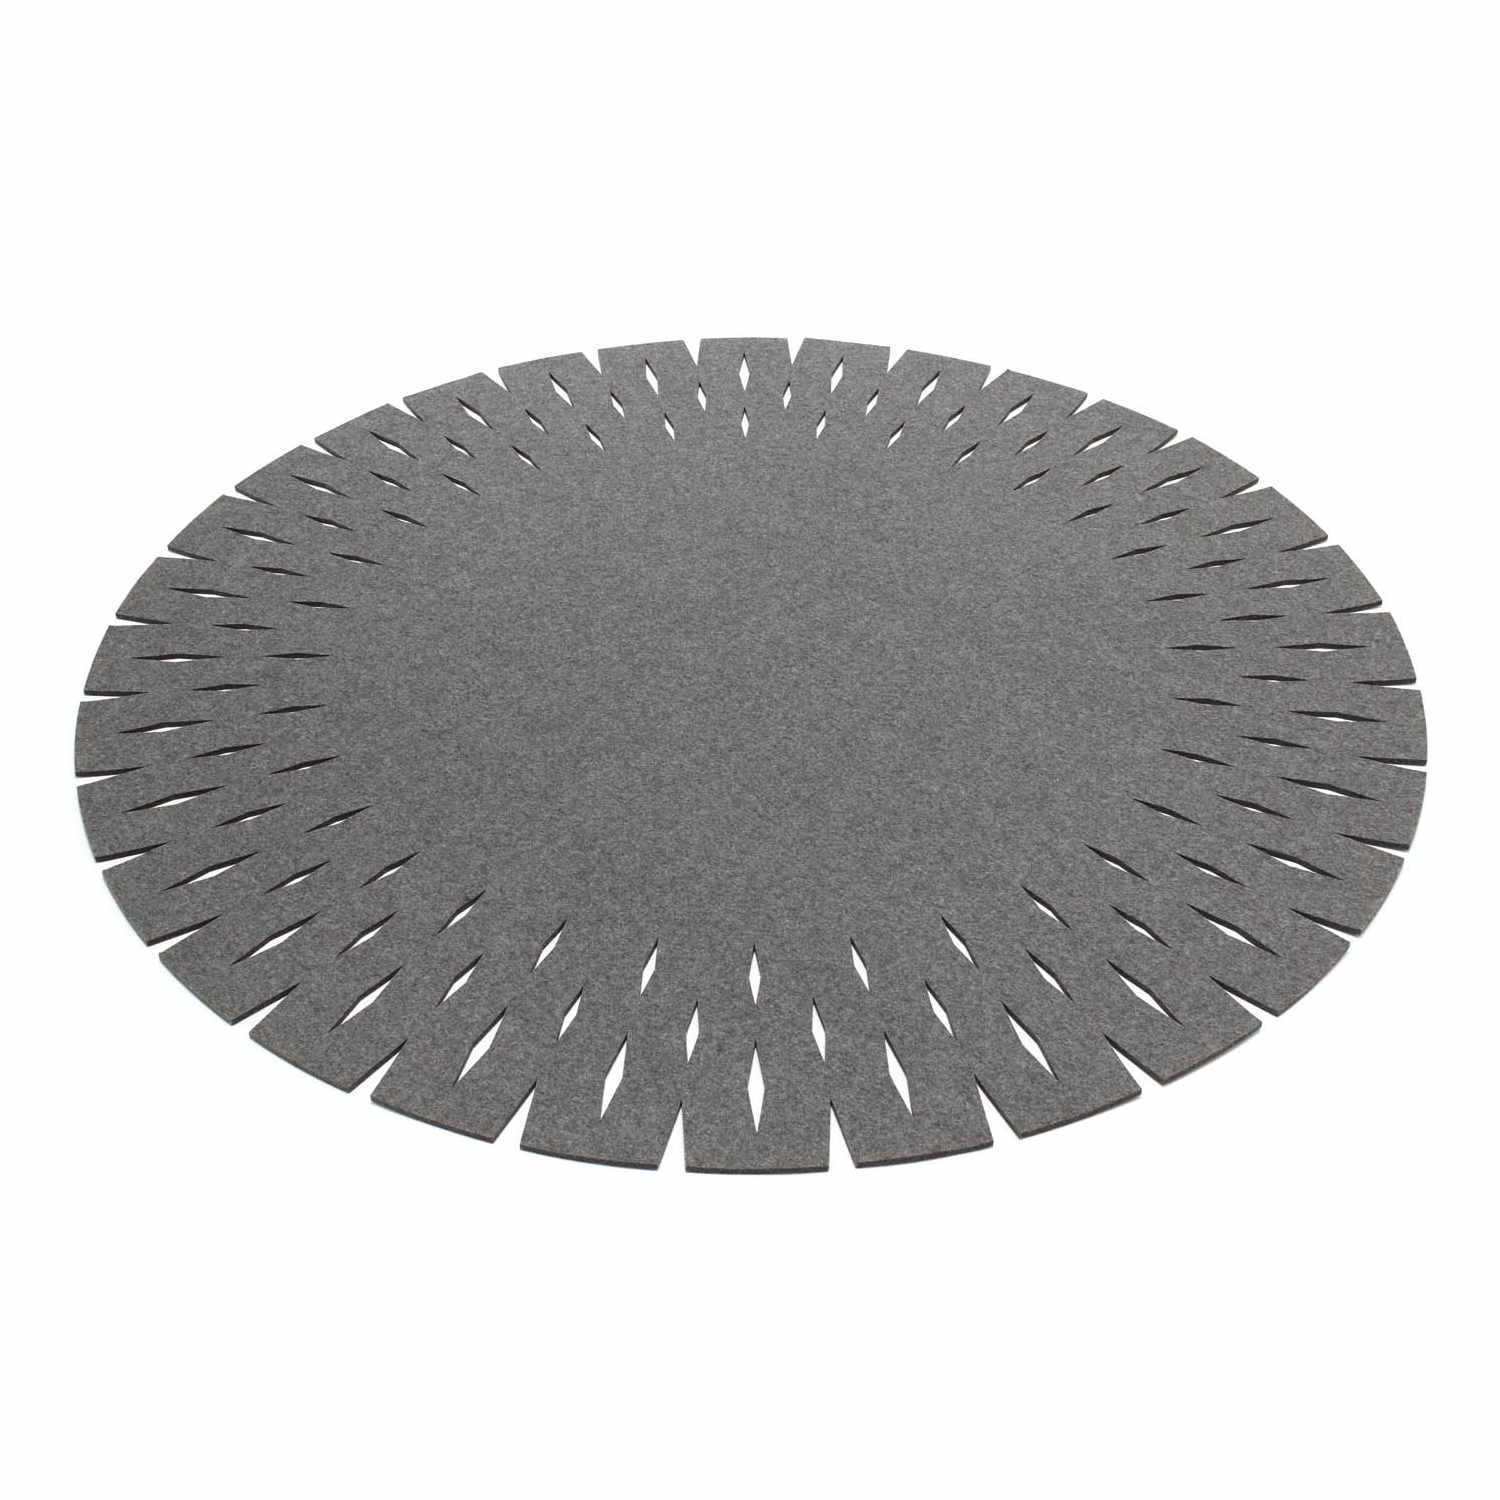 Grate Teppich, Farbe graphit, Durchmesser 120 cm von HEY-SIGN